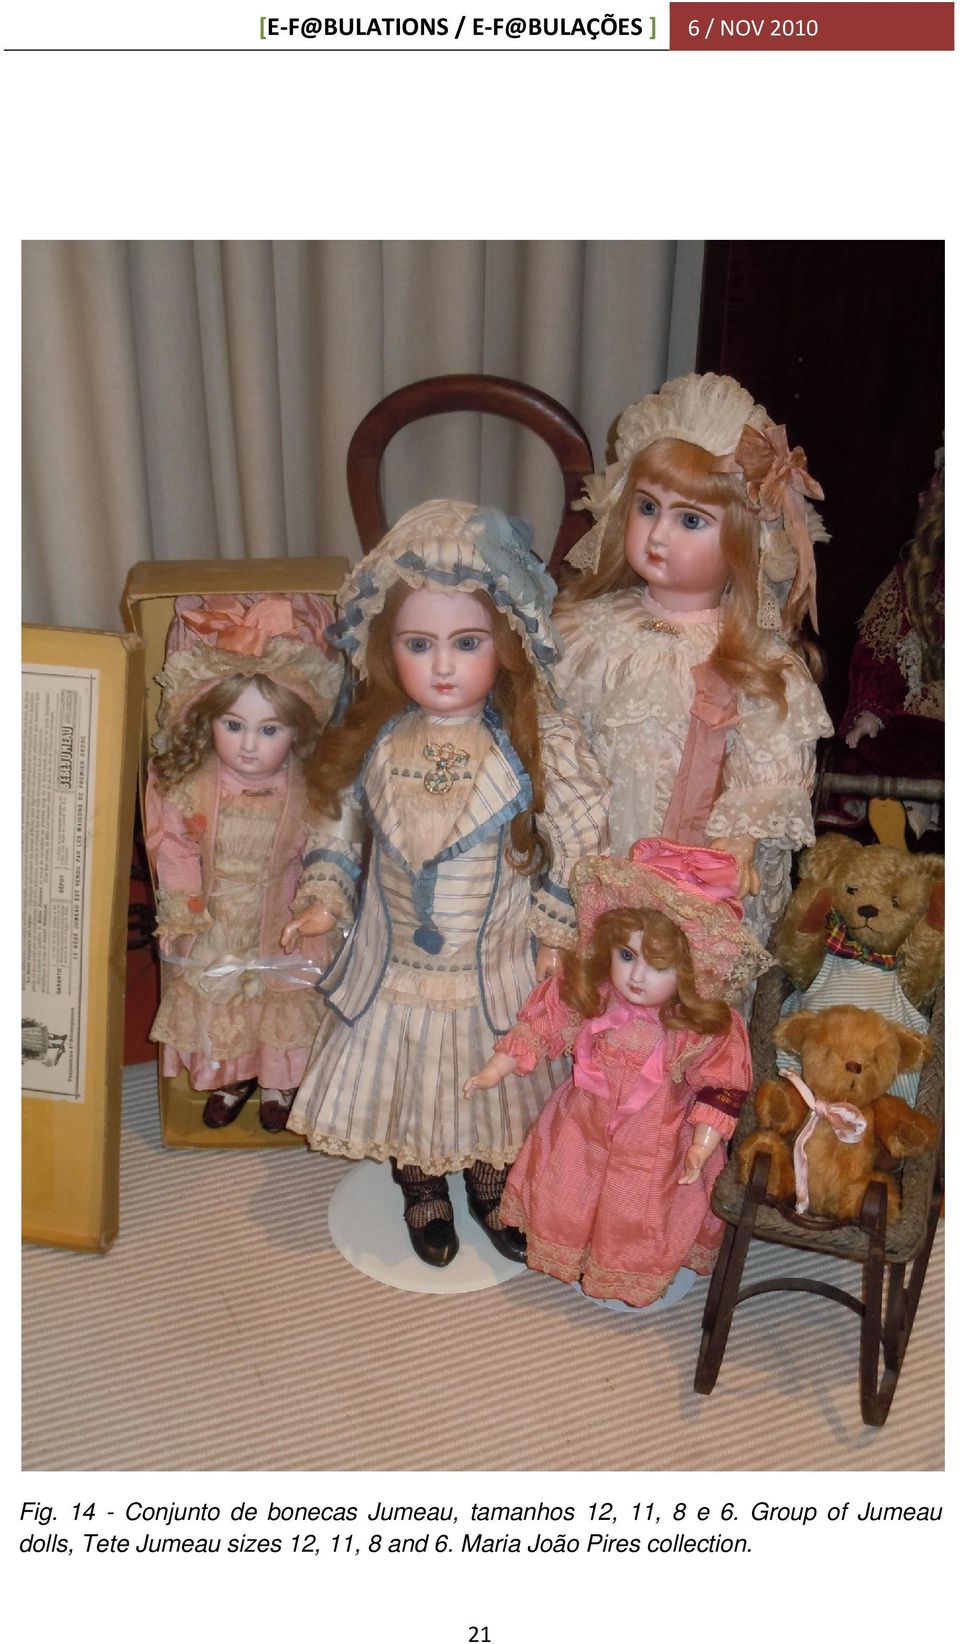 Group of Jumeau dolls, Tete Jumeau